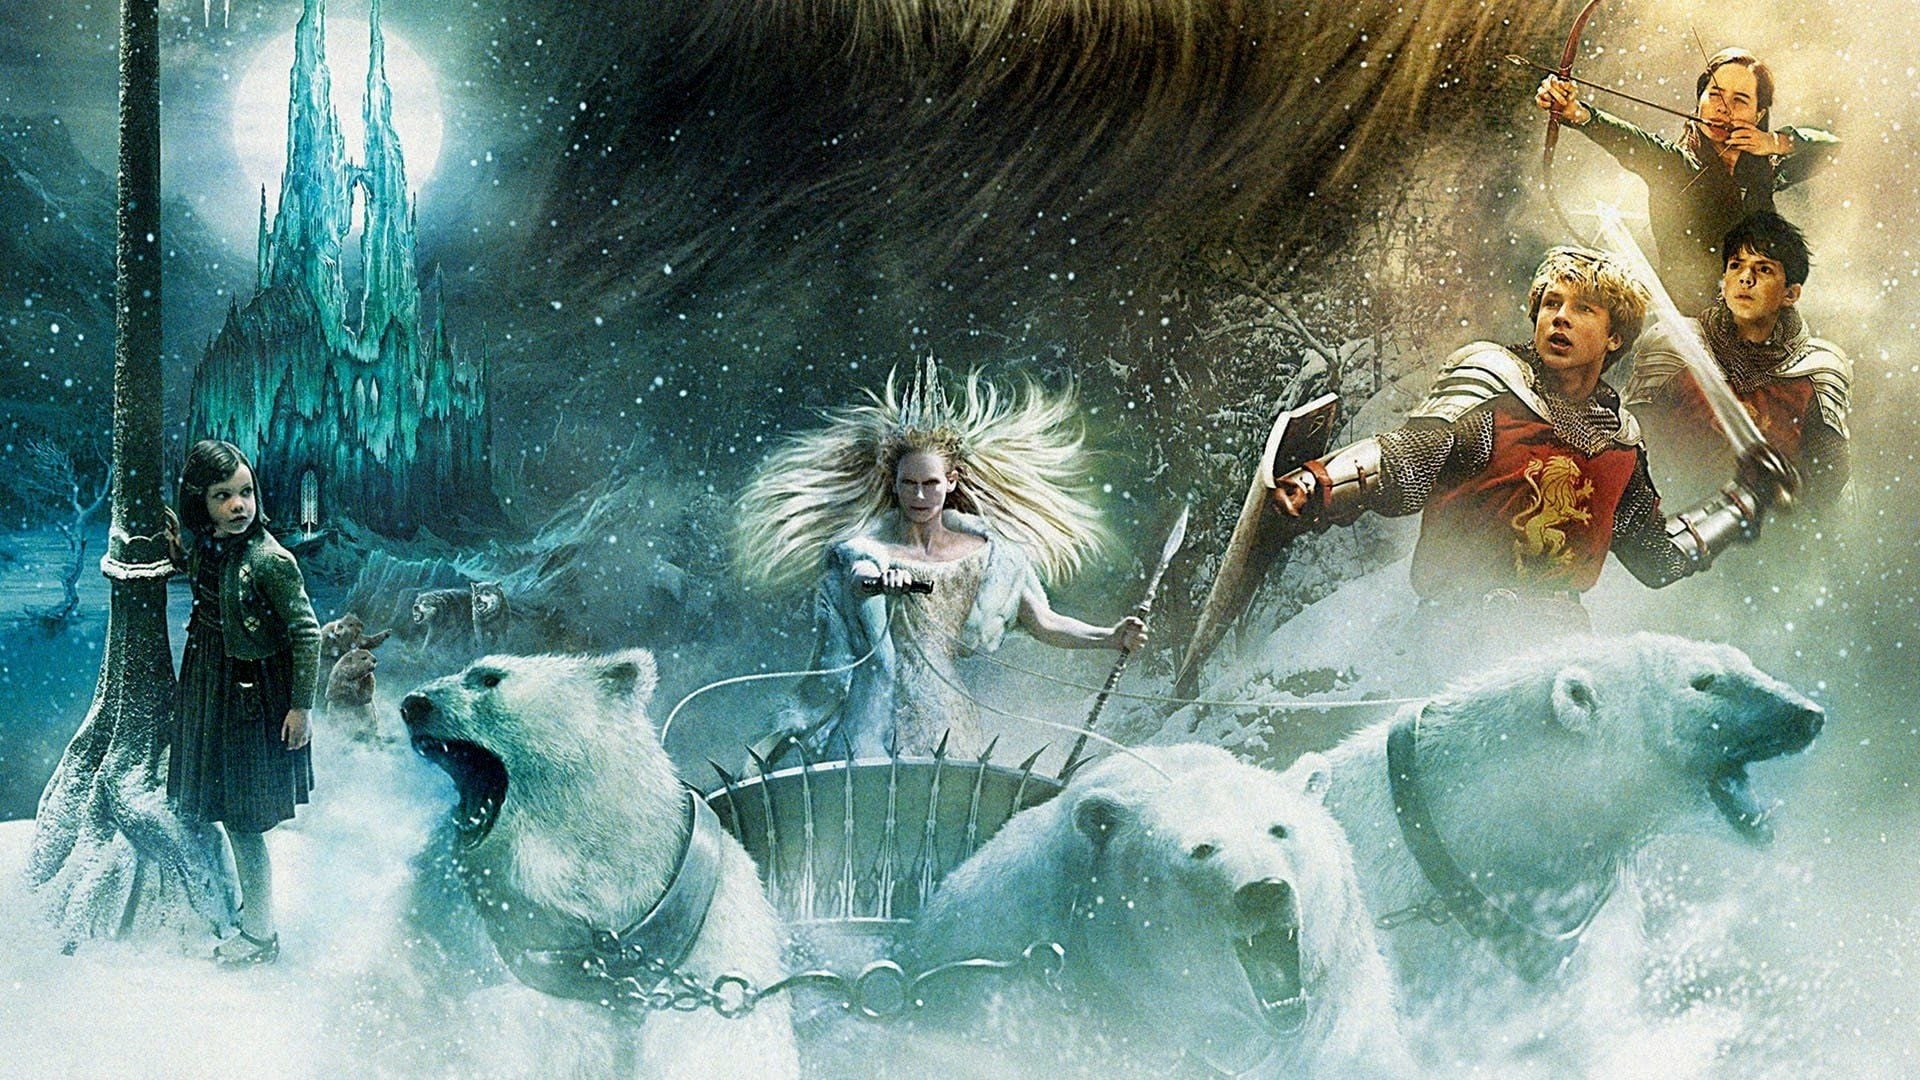 Berättelsen om Narnia - Häxan och lejonet (2005)